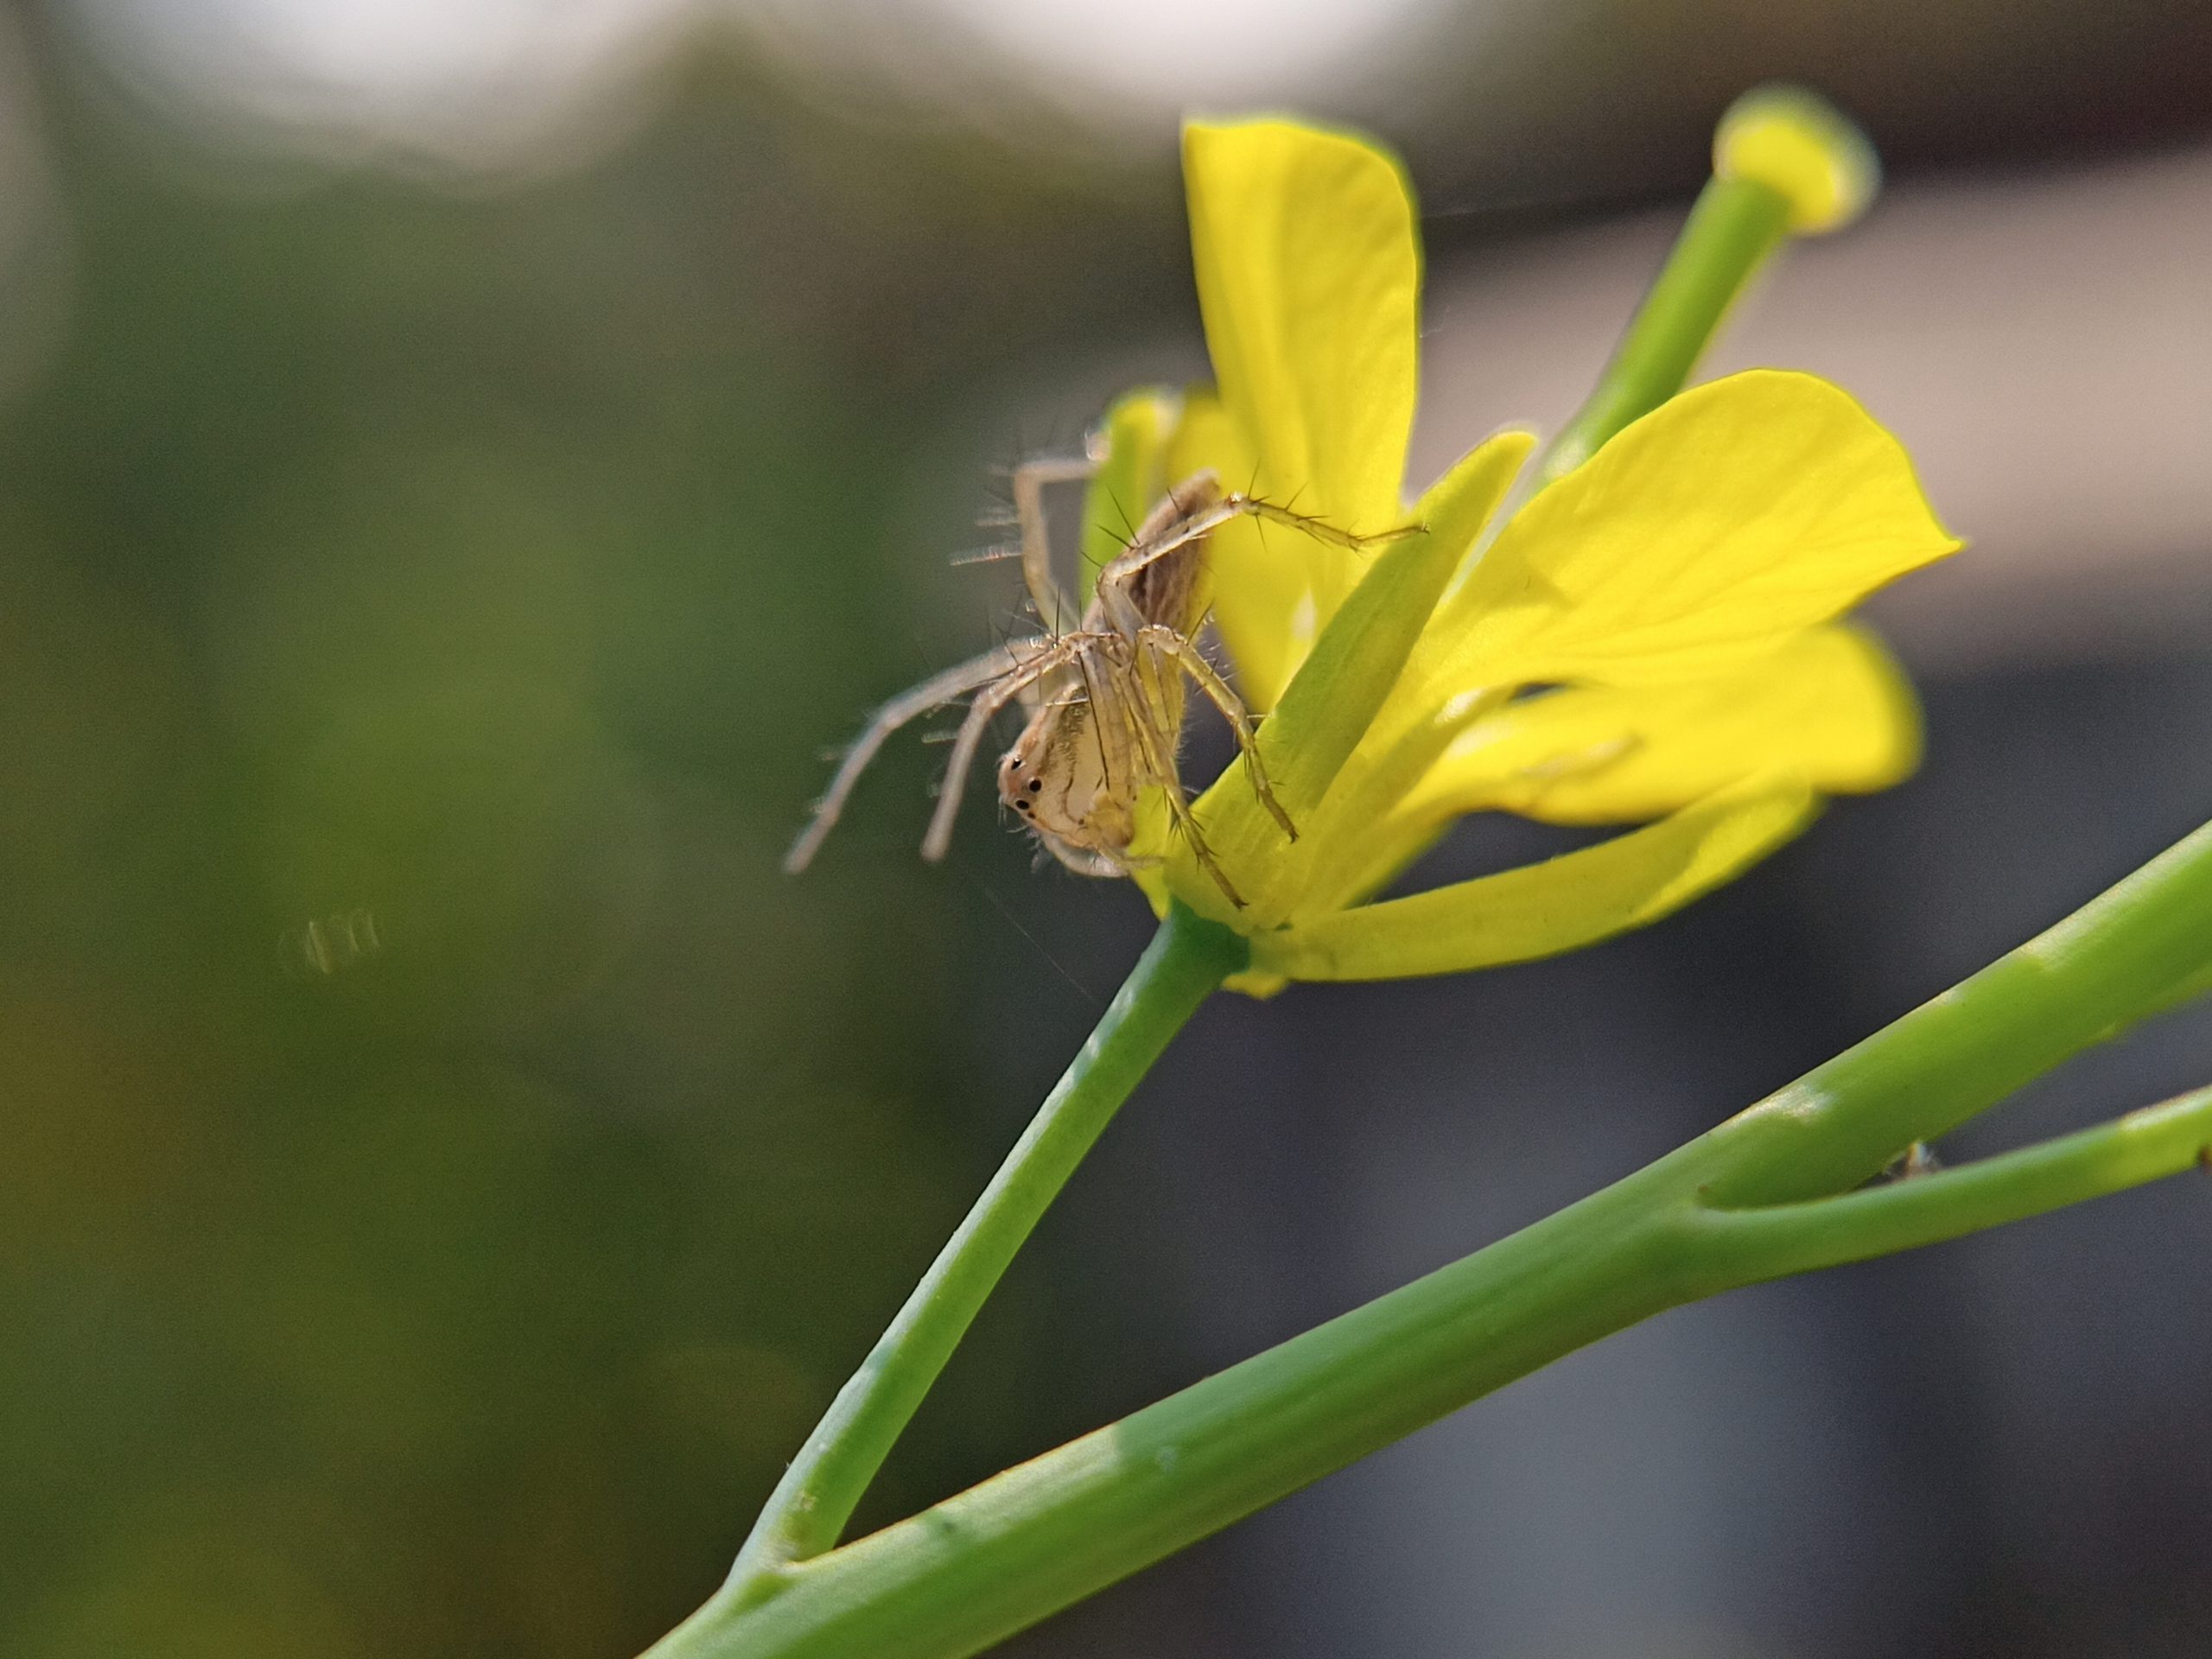 spider on flower